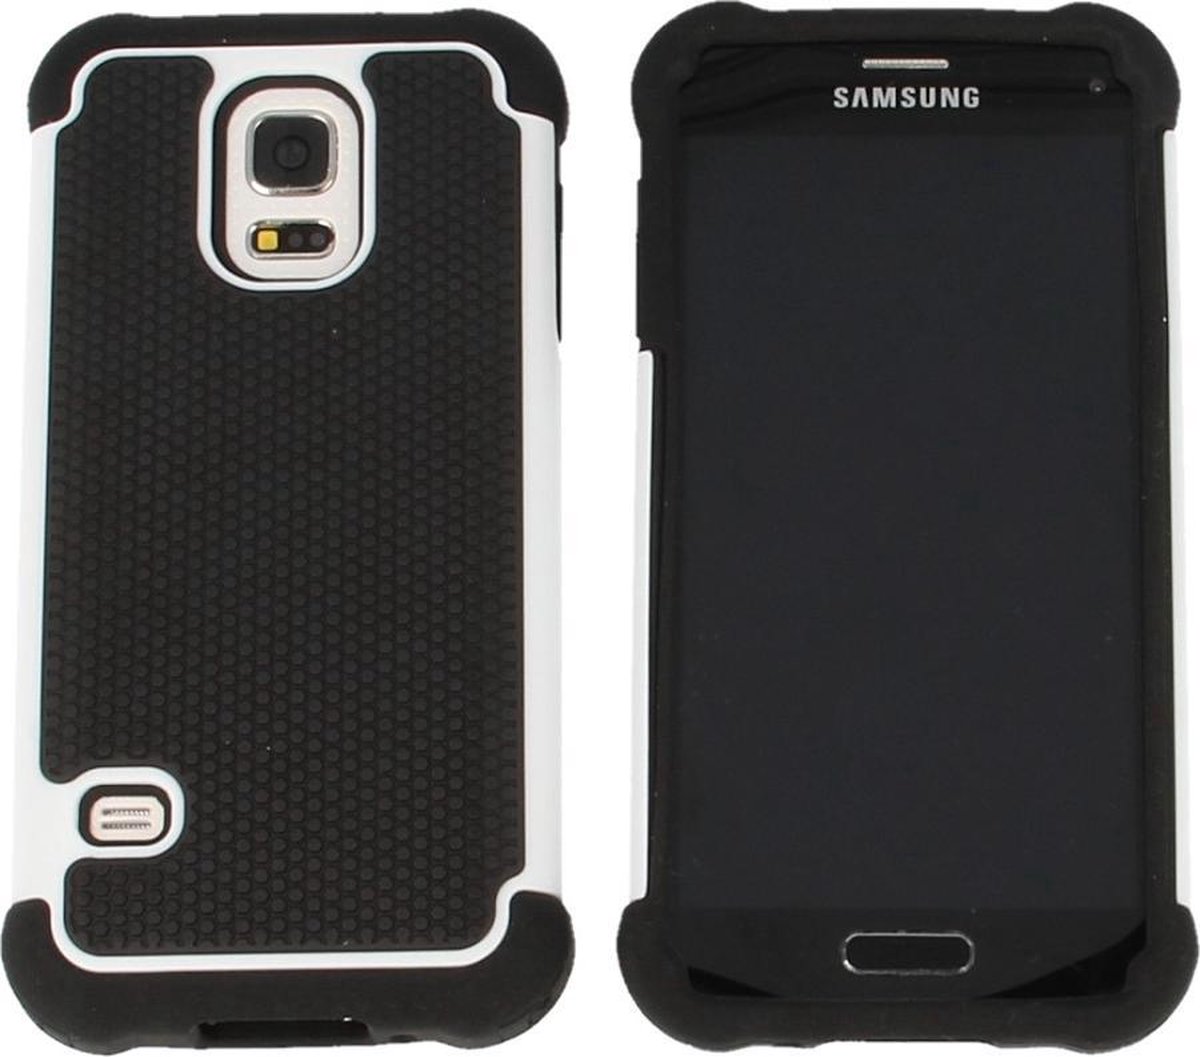 Samsung Galaxy S5 mini G800 Shock Proof Case Zwart Wit